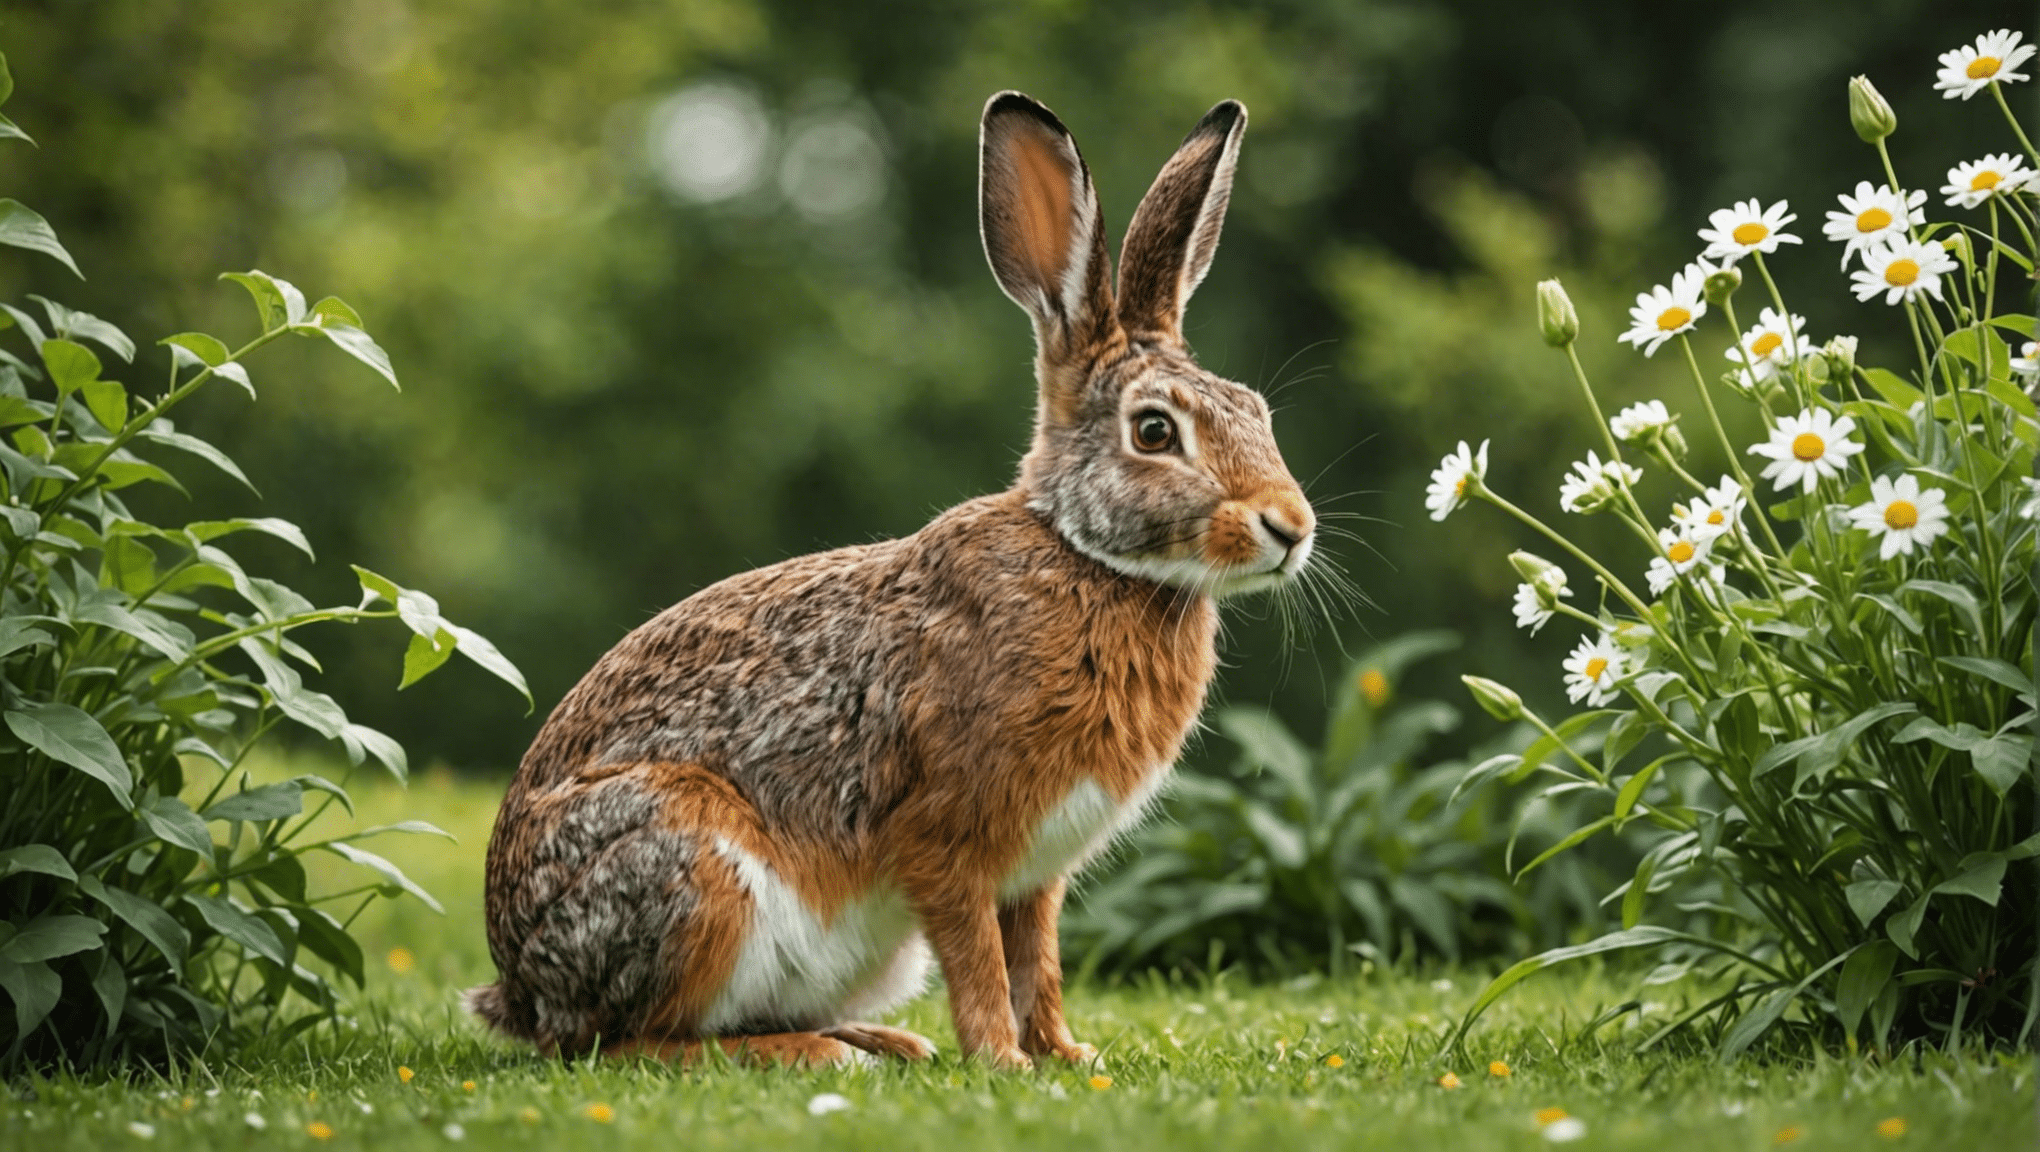 野ウサギとウサギのユニークな特徴と行動についての洞察に満ちた調査を通じて、野ウサギとウサギの違いを発見してください。